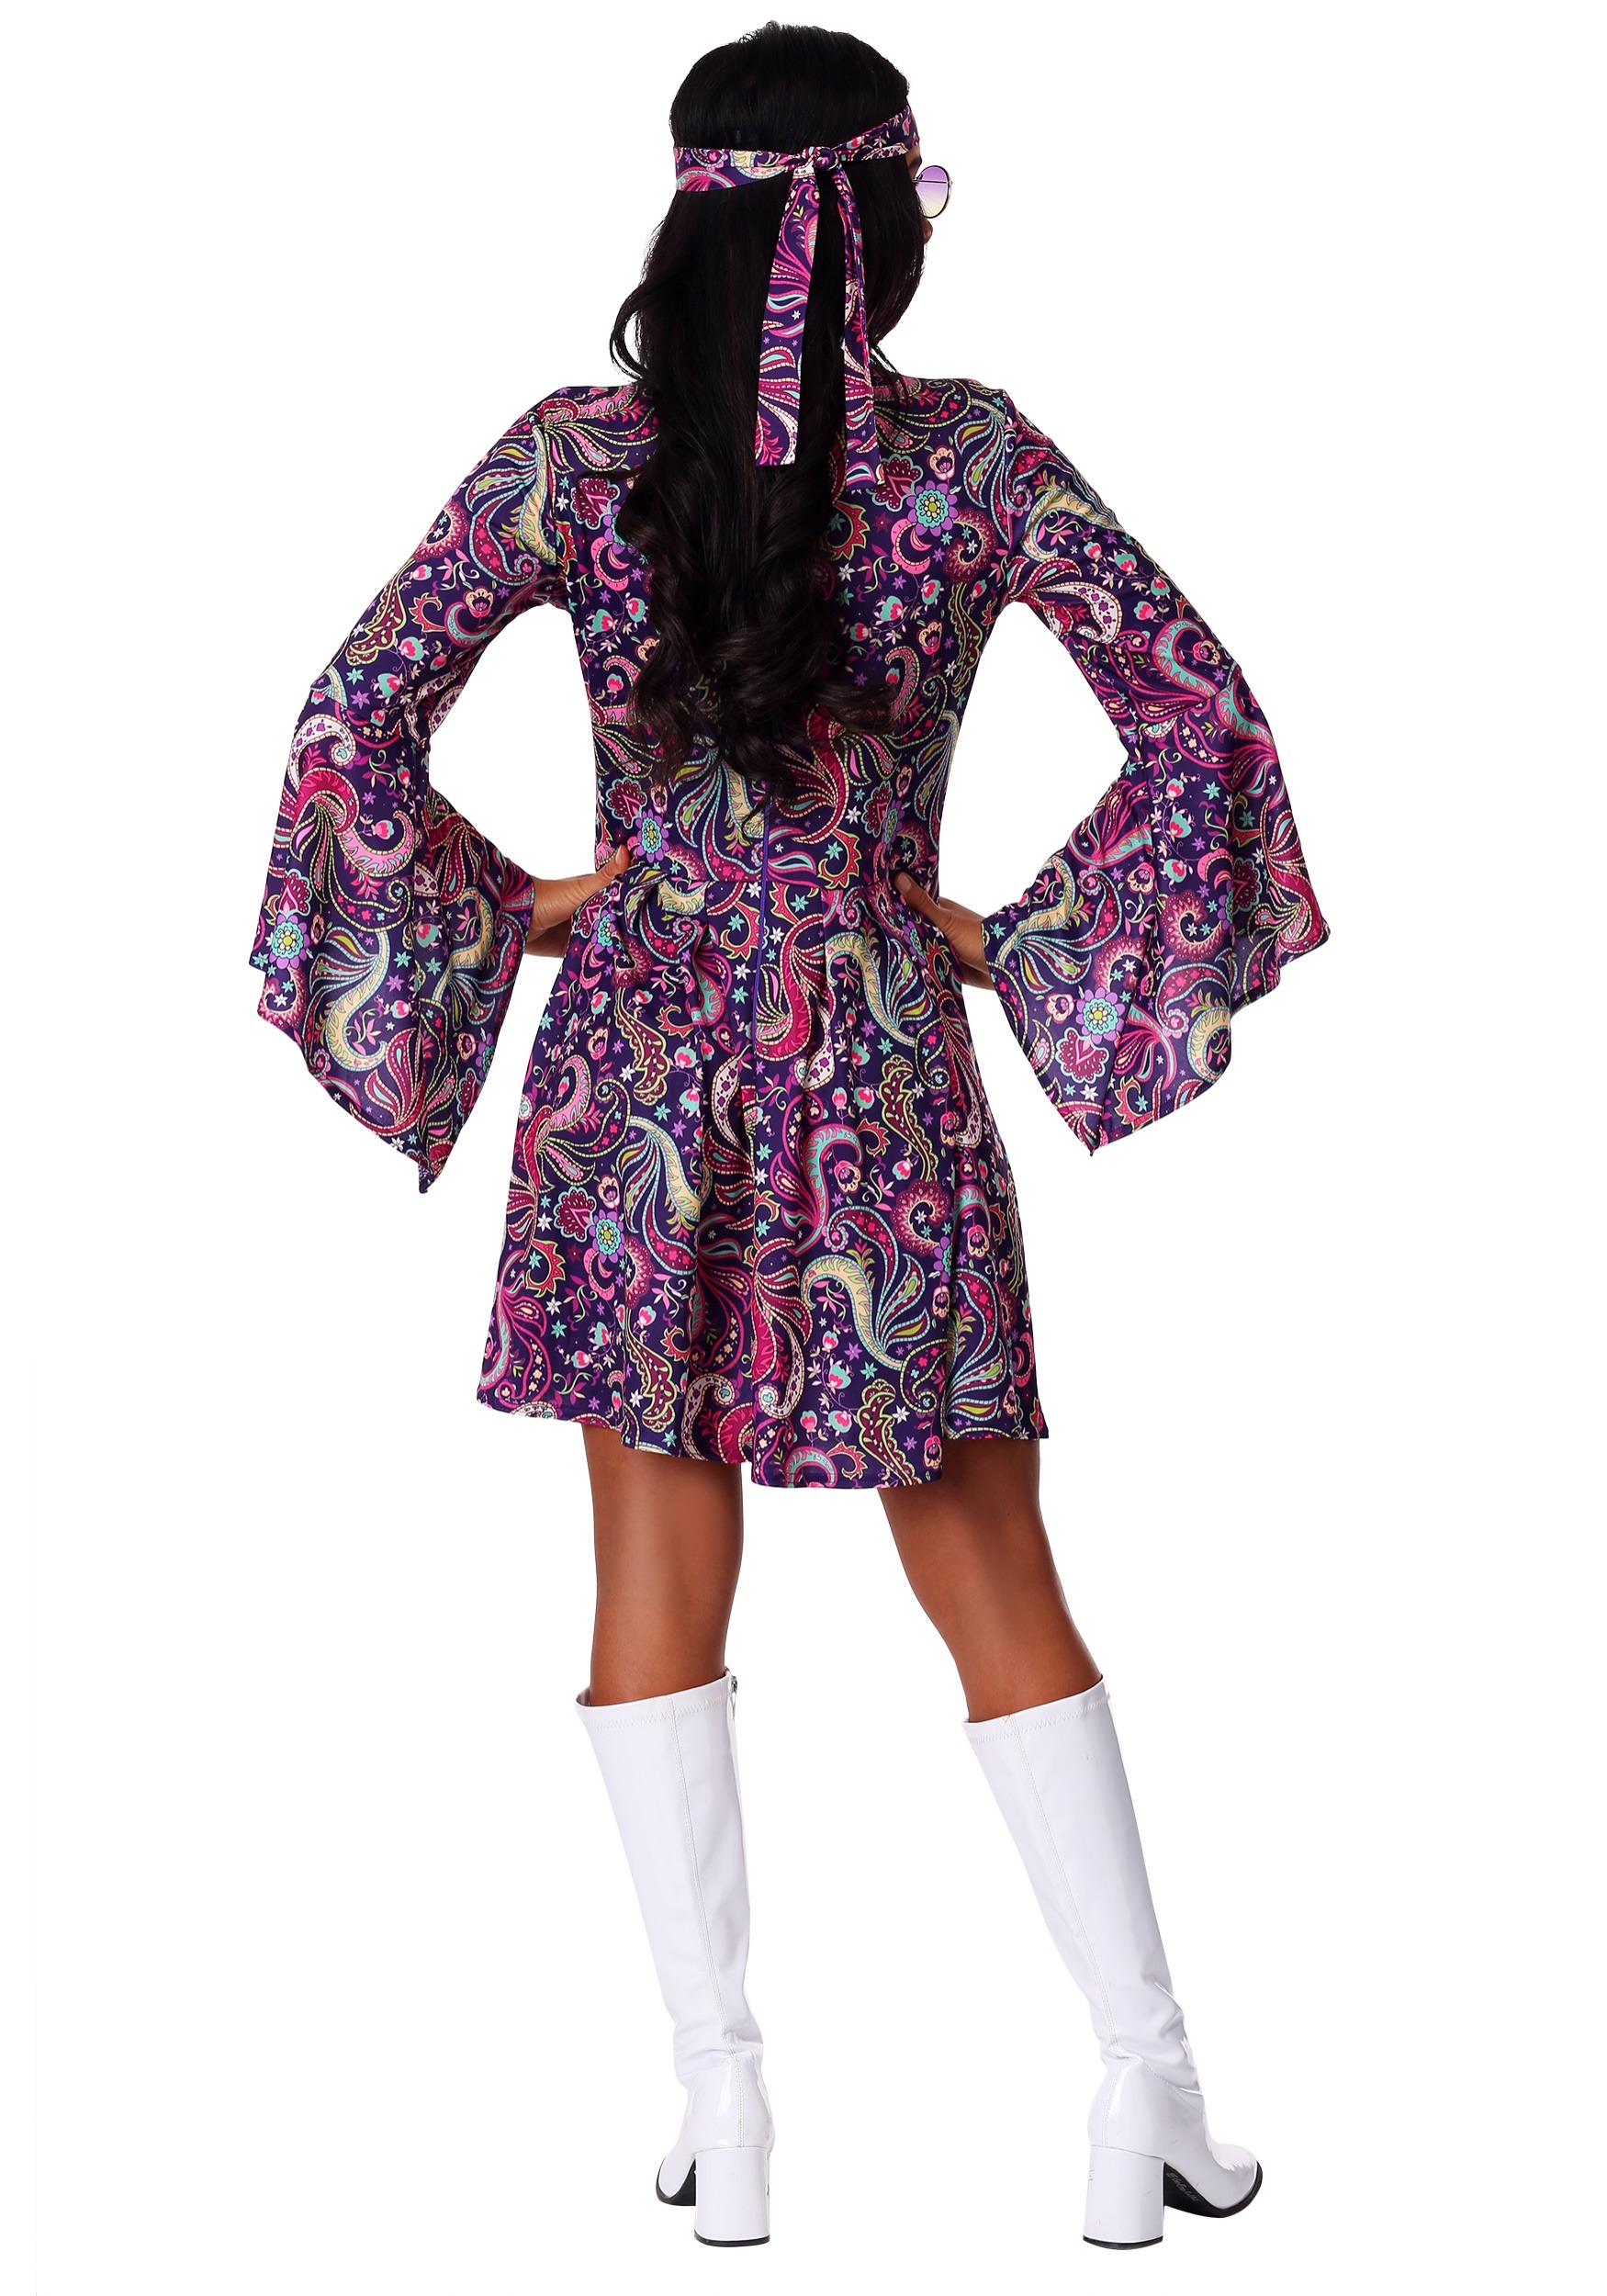 Women's Woodstock Hippie Fancy Dress Costume Dress